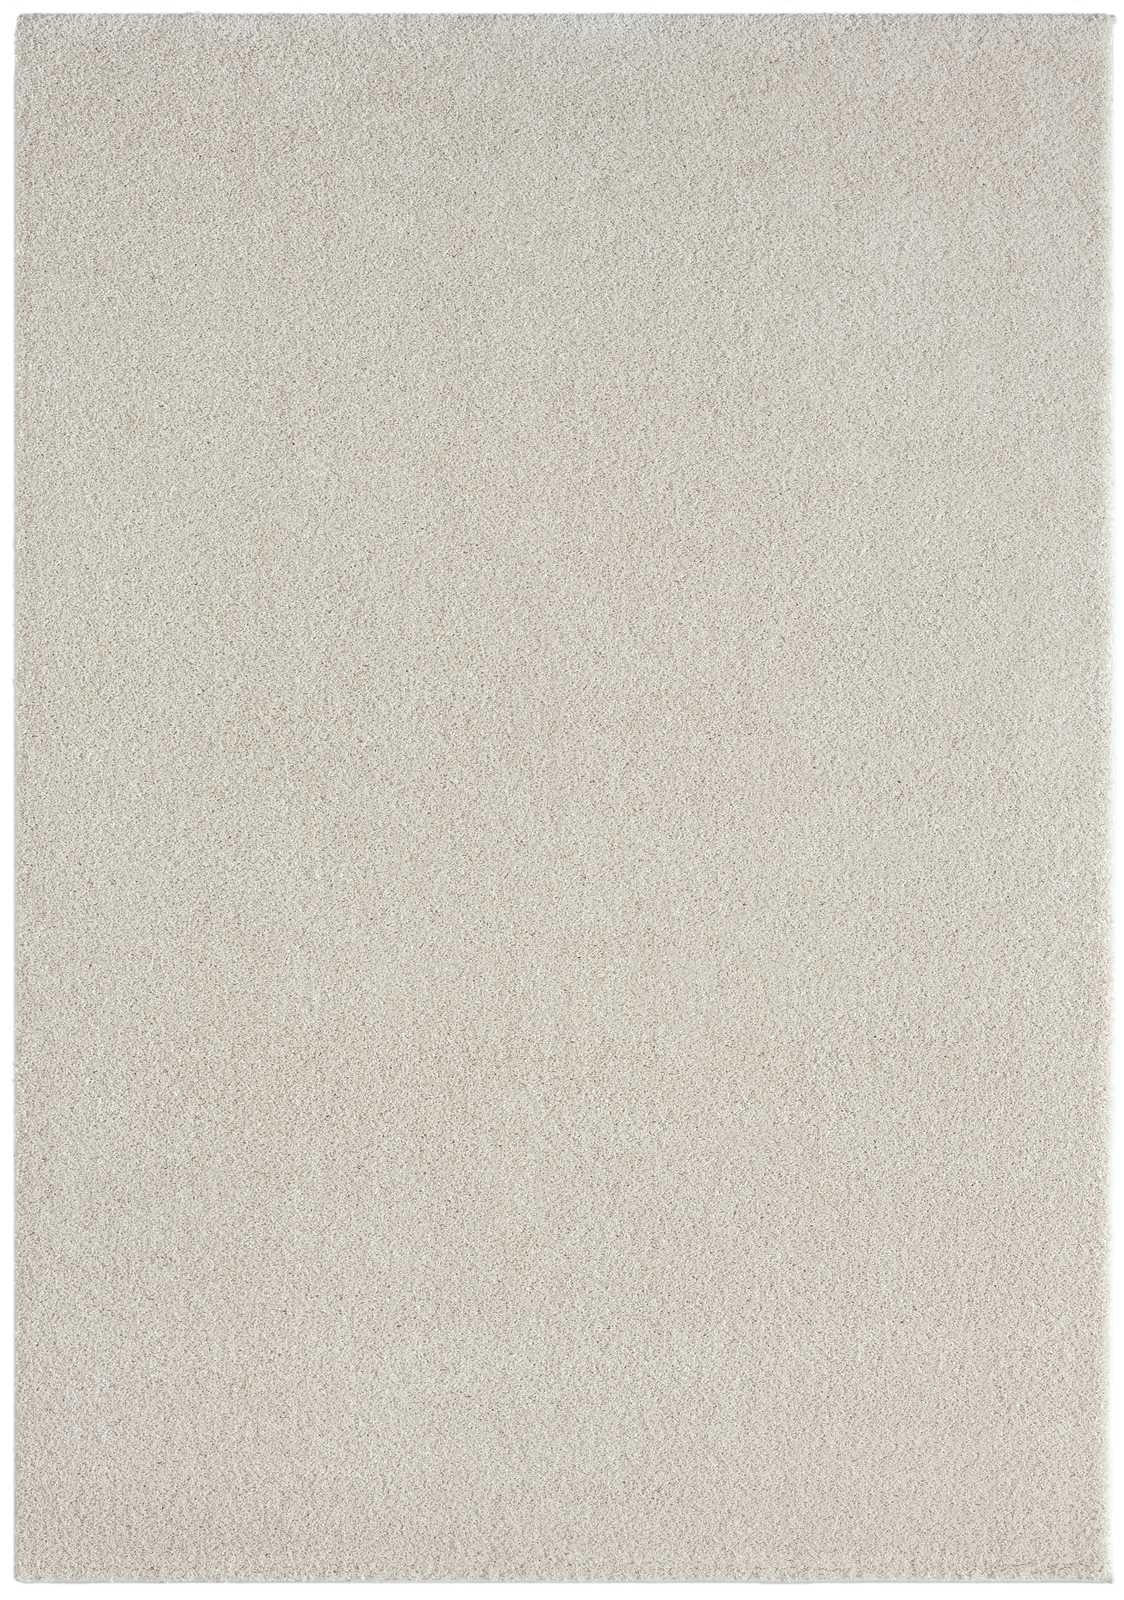             Cremefarbener Kurzflor Teppich – 150 x 80 cm
        